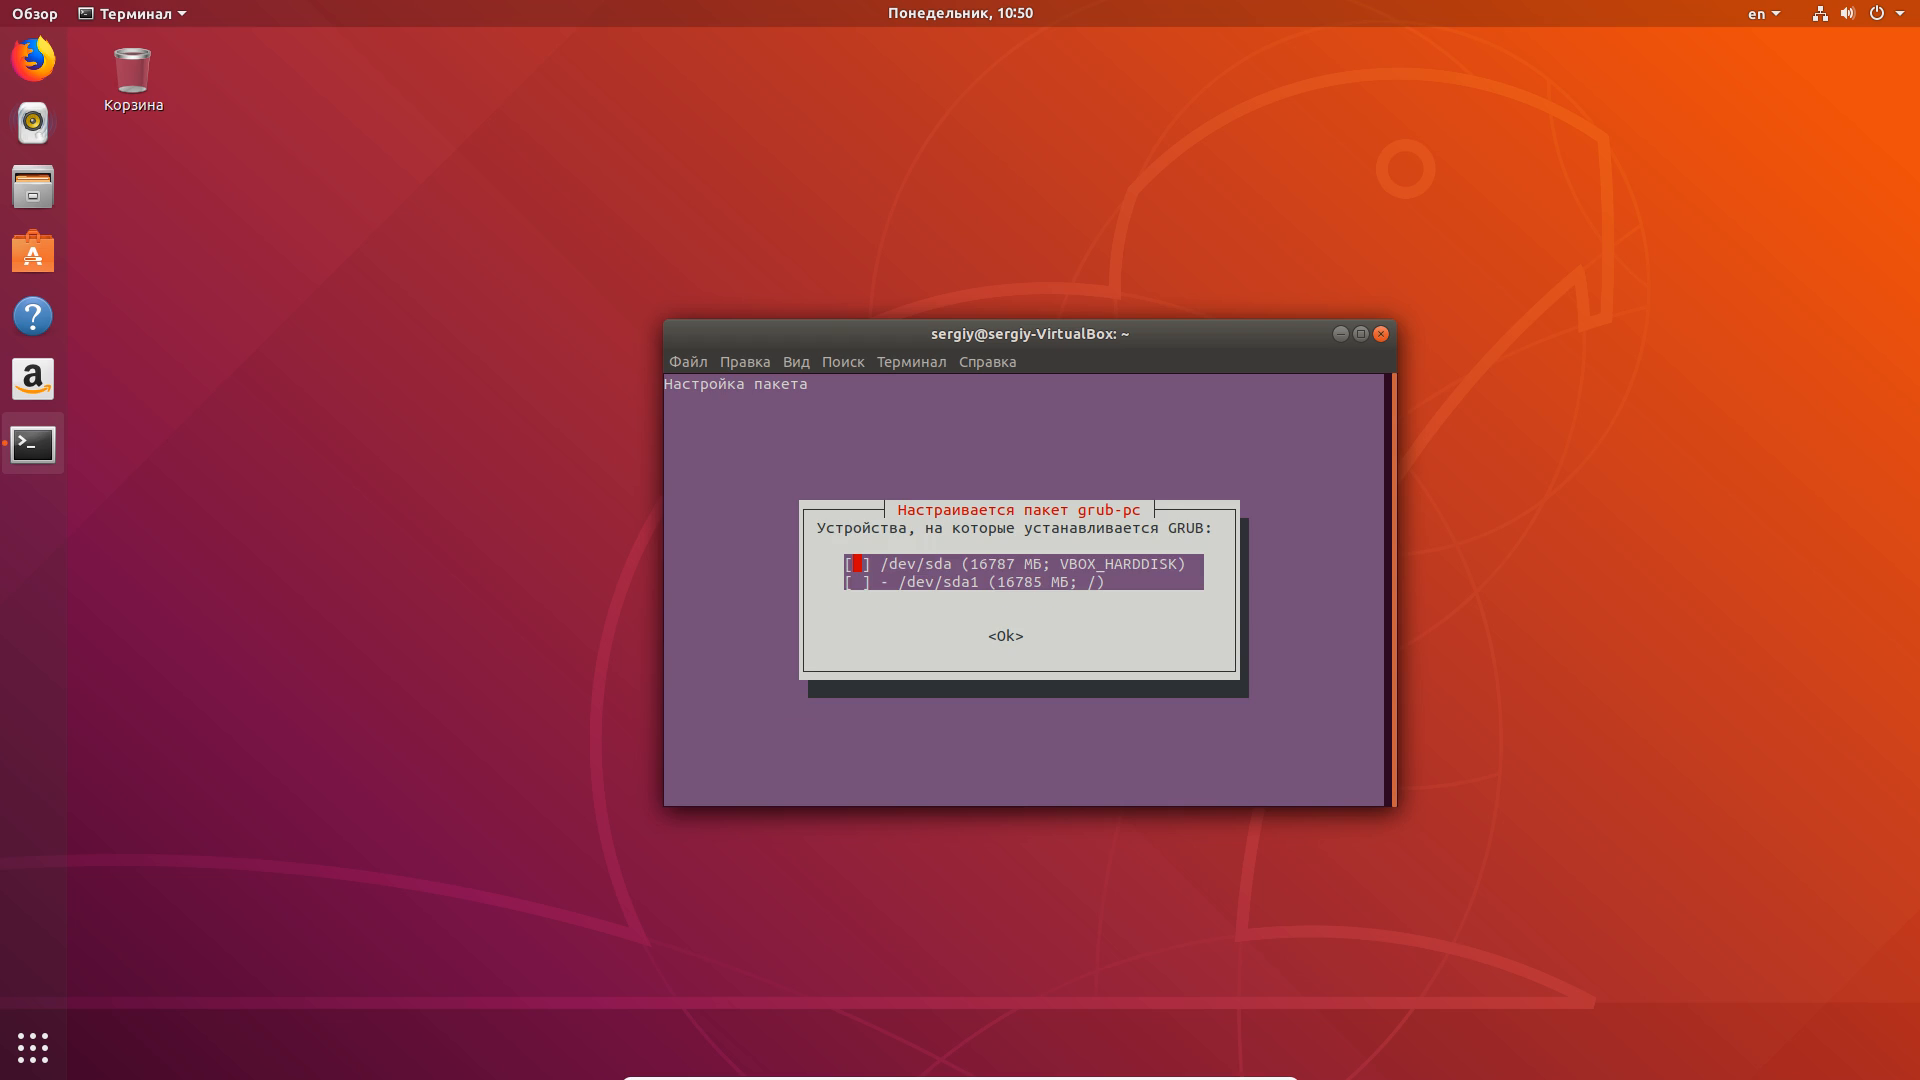 Обновление убунту через терминал. Программы и обновления Ubuntu. Обновить версию Ubuntu через терминал. Ubuntu проверка подключения. Обновление через терминал